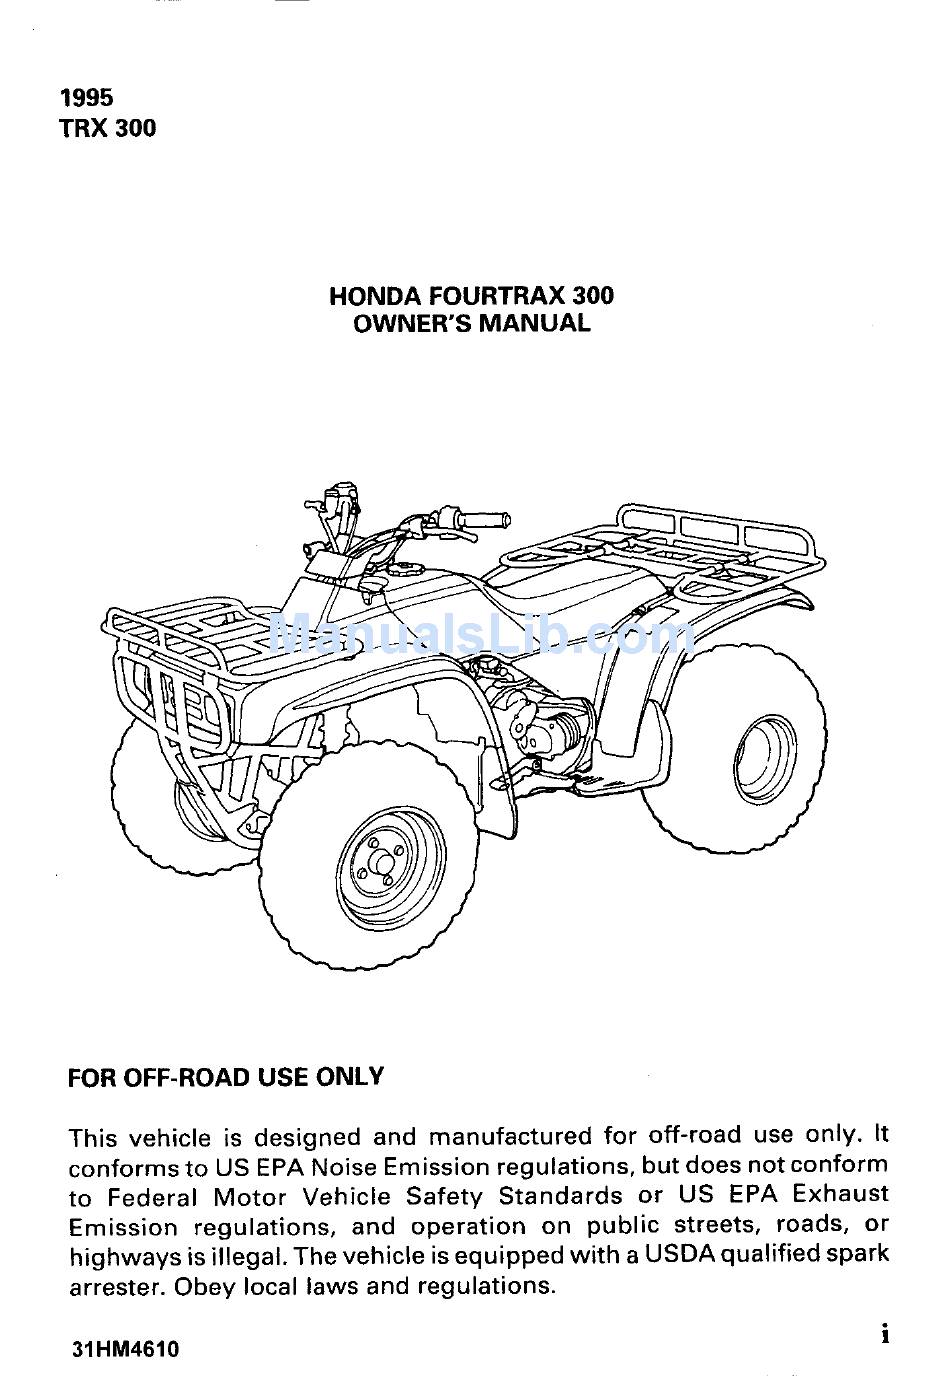 HONDA FOURTRAX 300 OWNER'S MANUAL Pdf Download | ManualsLib